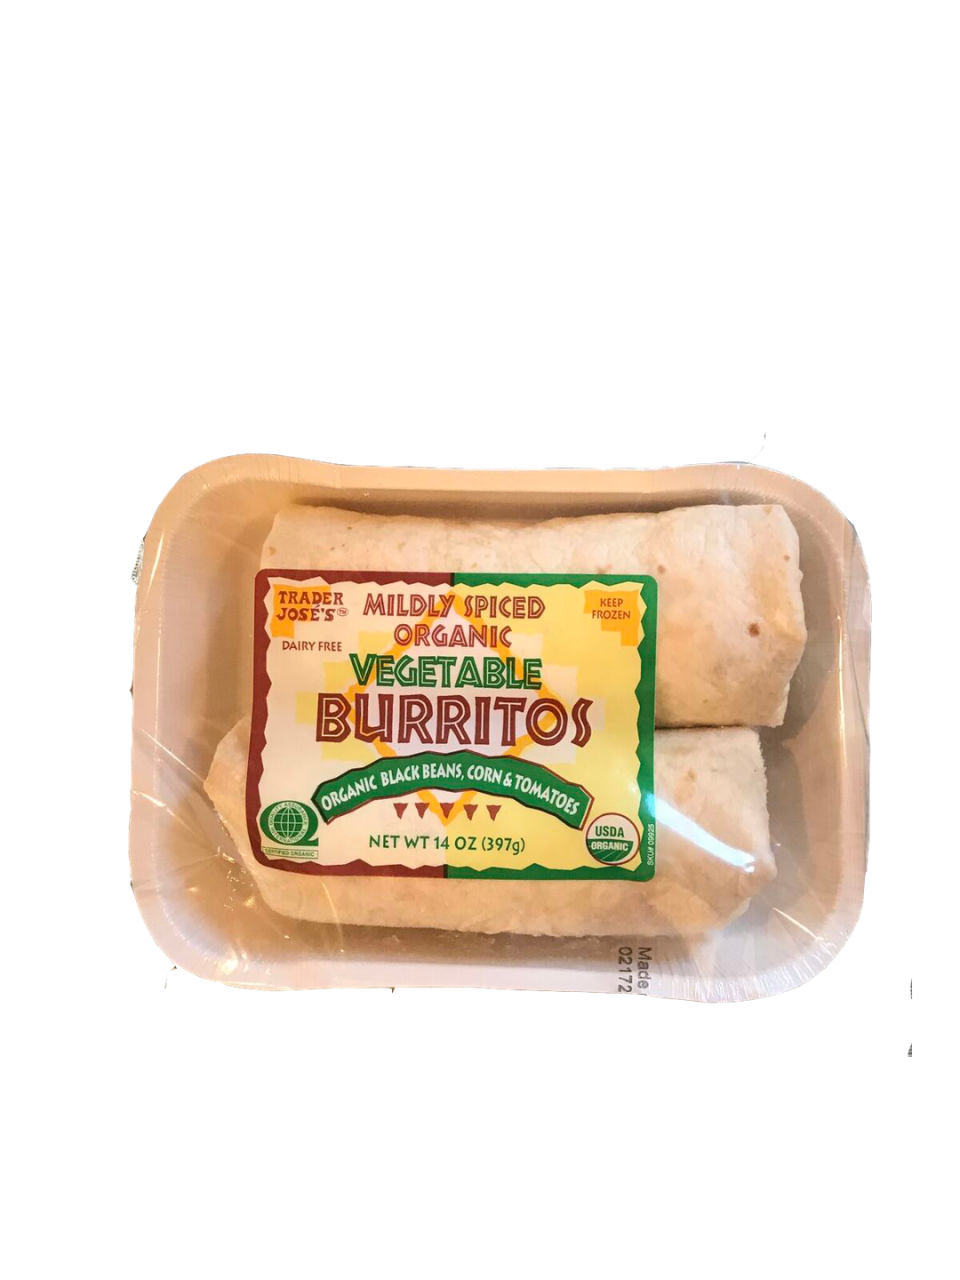 43. Vegetable Burritos